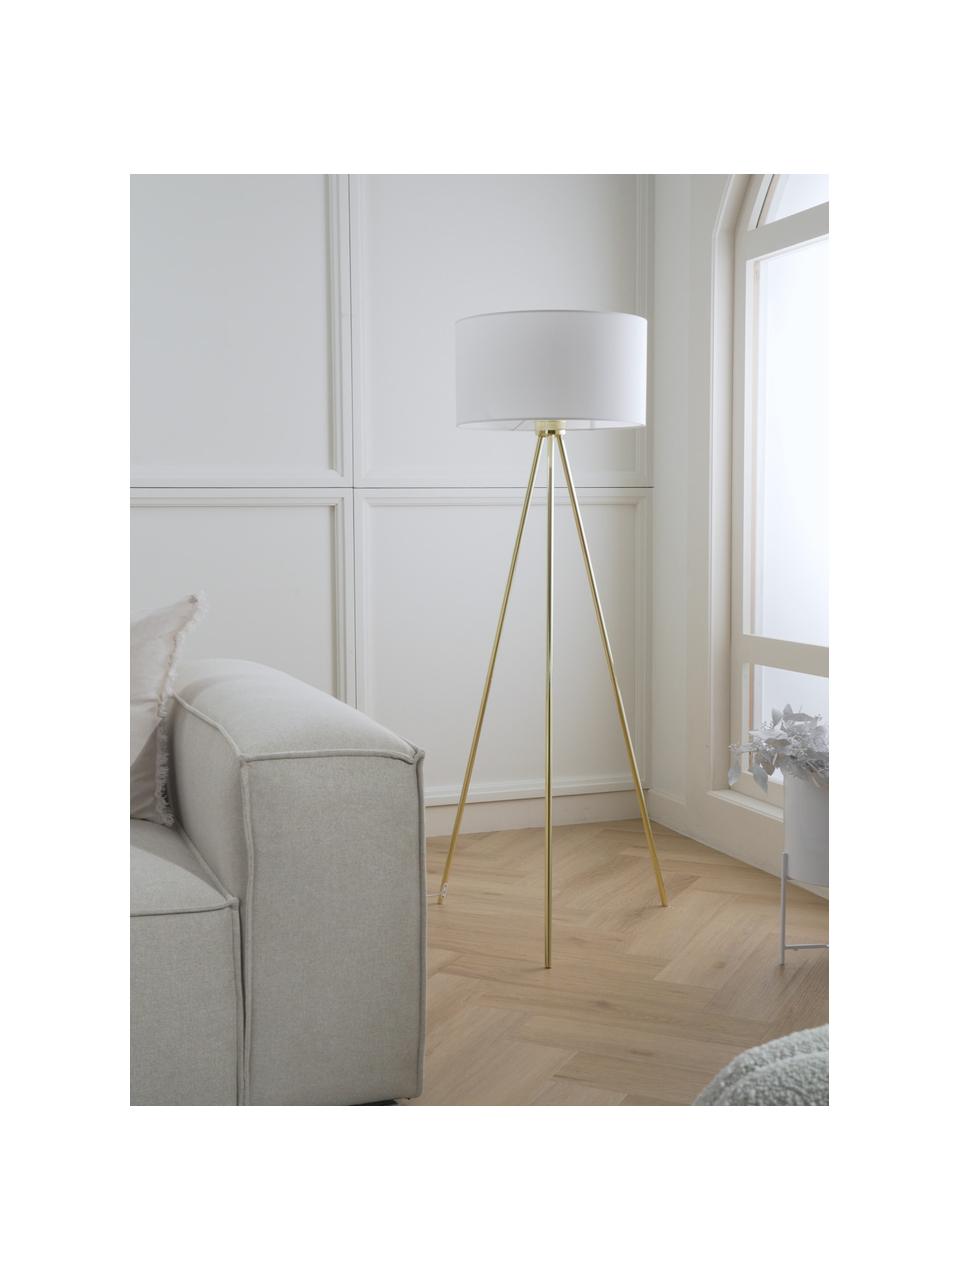 Lámpara de pie trípode Cella, Pantalla: mezcla de algodón, Cable: plástico, Blanco, dorado, Ø 48 x Al 158 cm